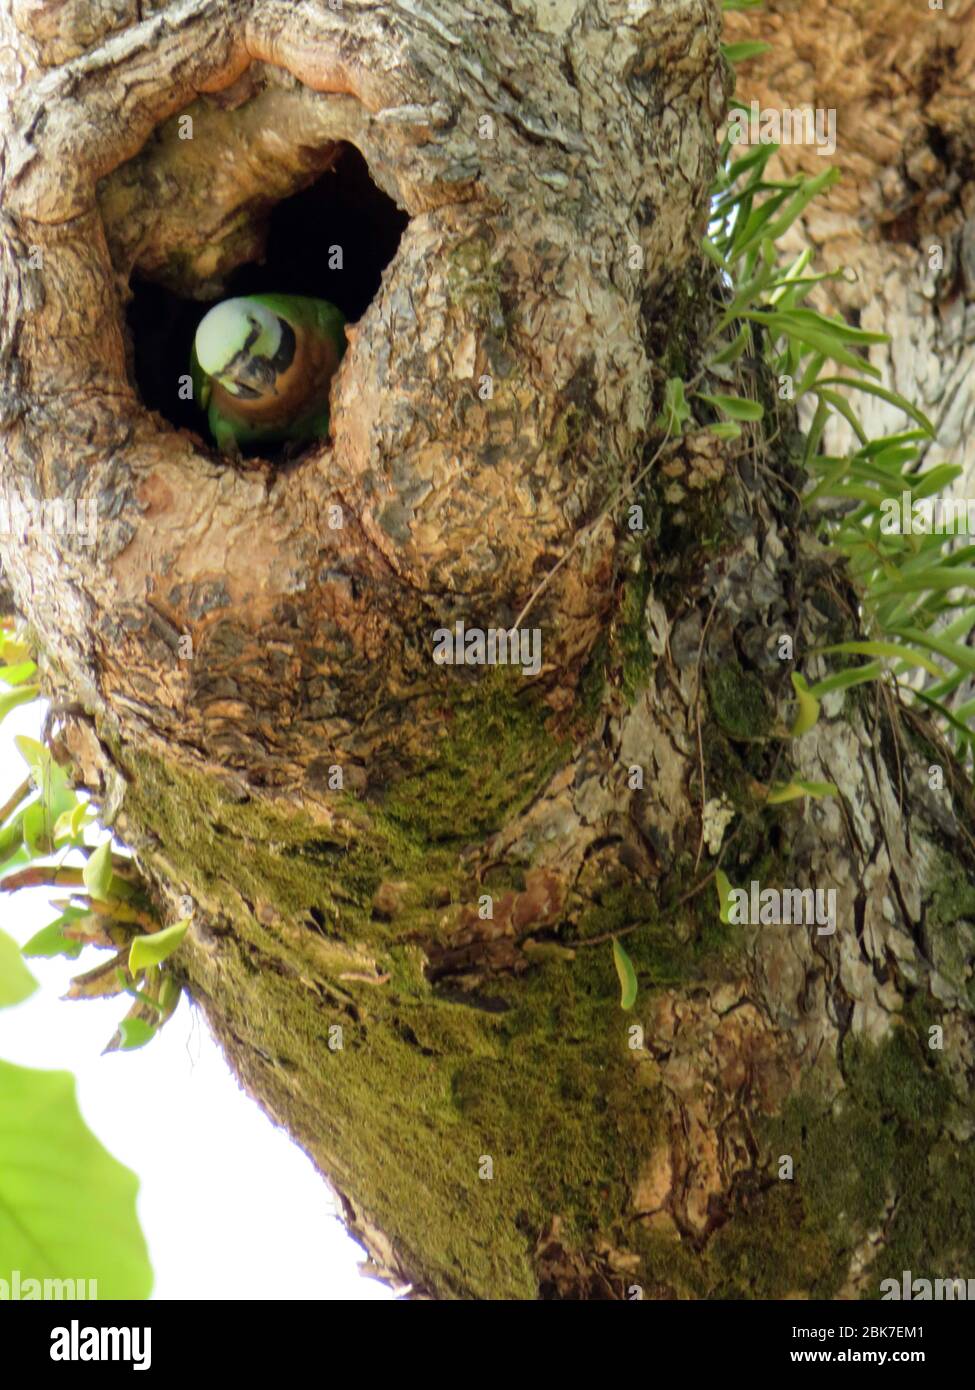 Grüner Papagei. Sittich (Rotbrustsittich oder Moustached Sittich) schaut von einem Loch in einem Baum herunter. Khao Lak Thailand. Süß, wohlfühlen. Stockfoto